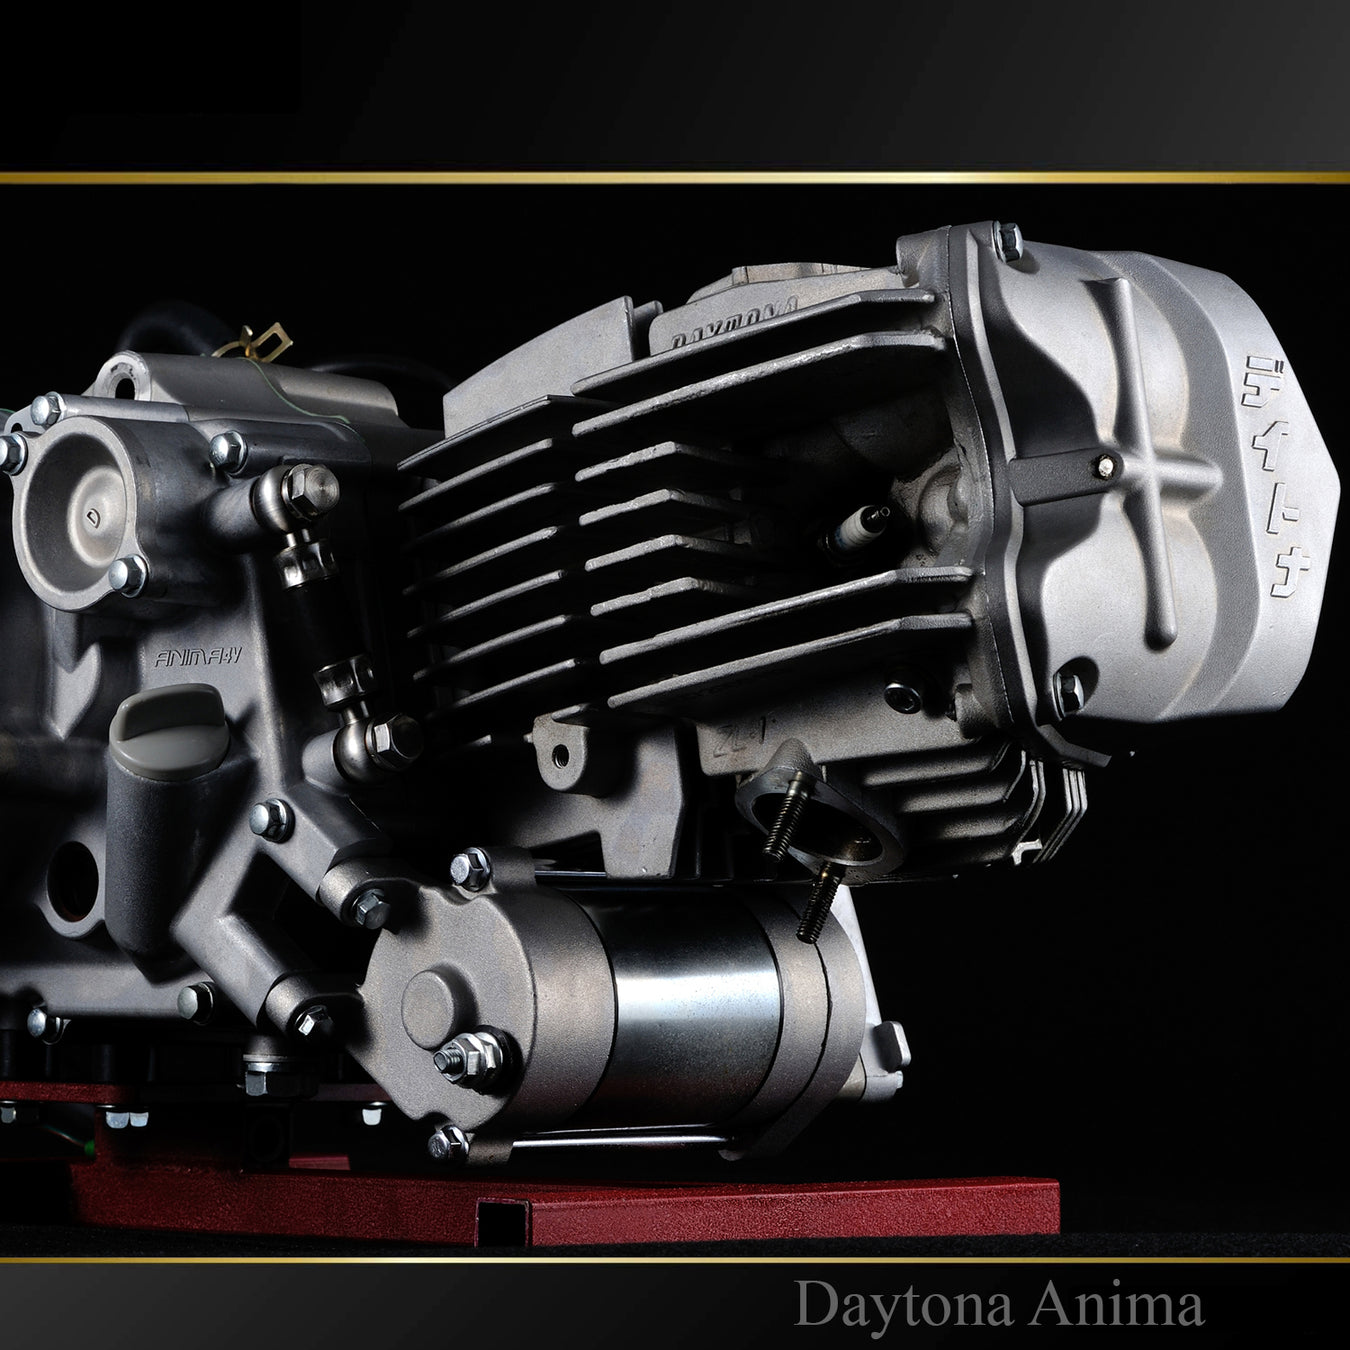 Daytona Anima 190cc engines